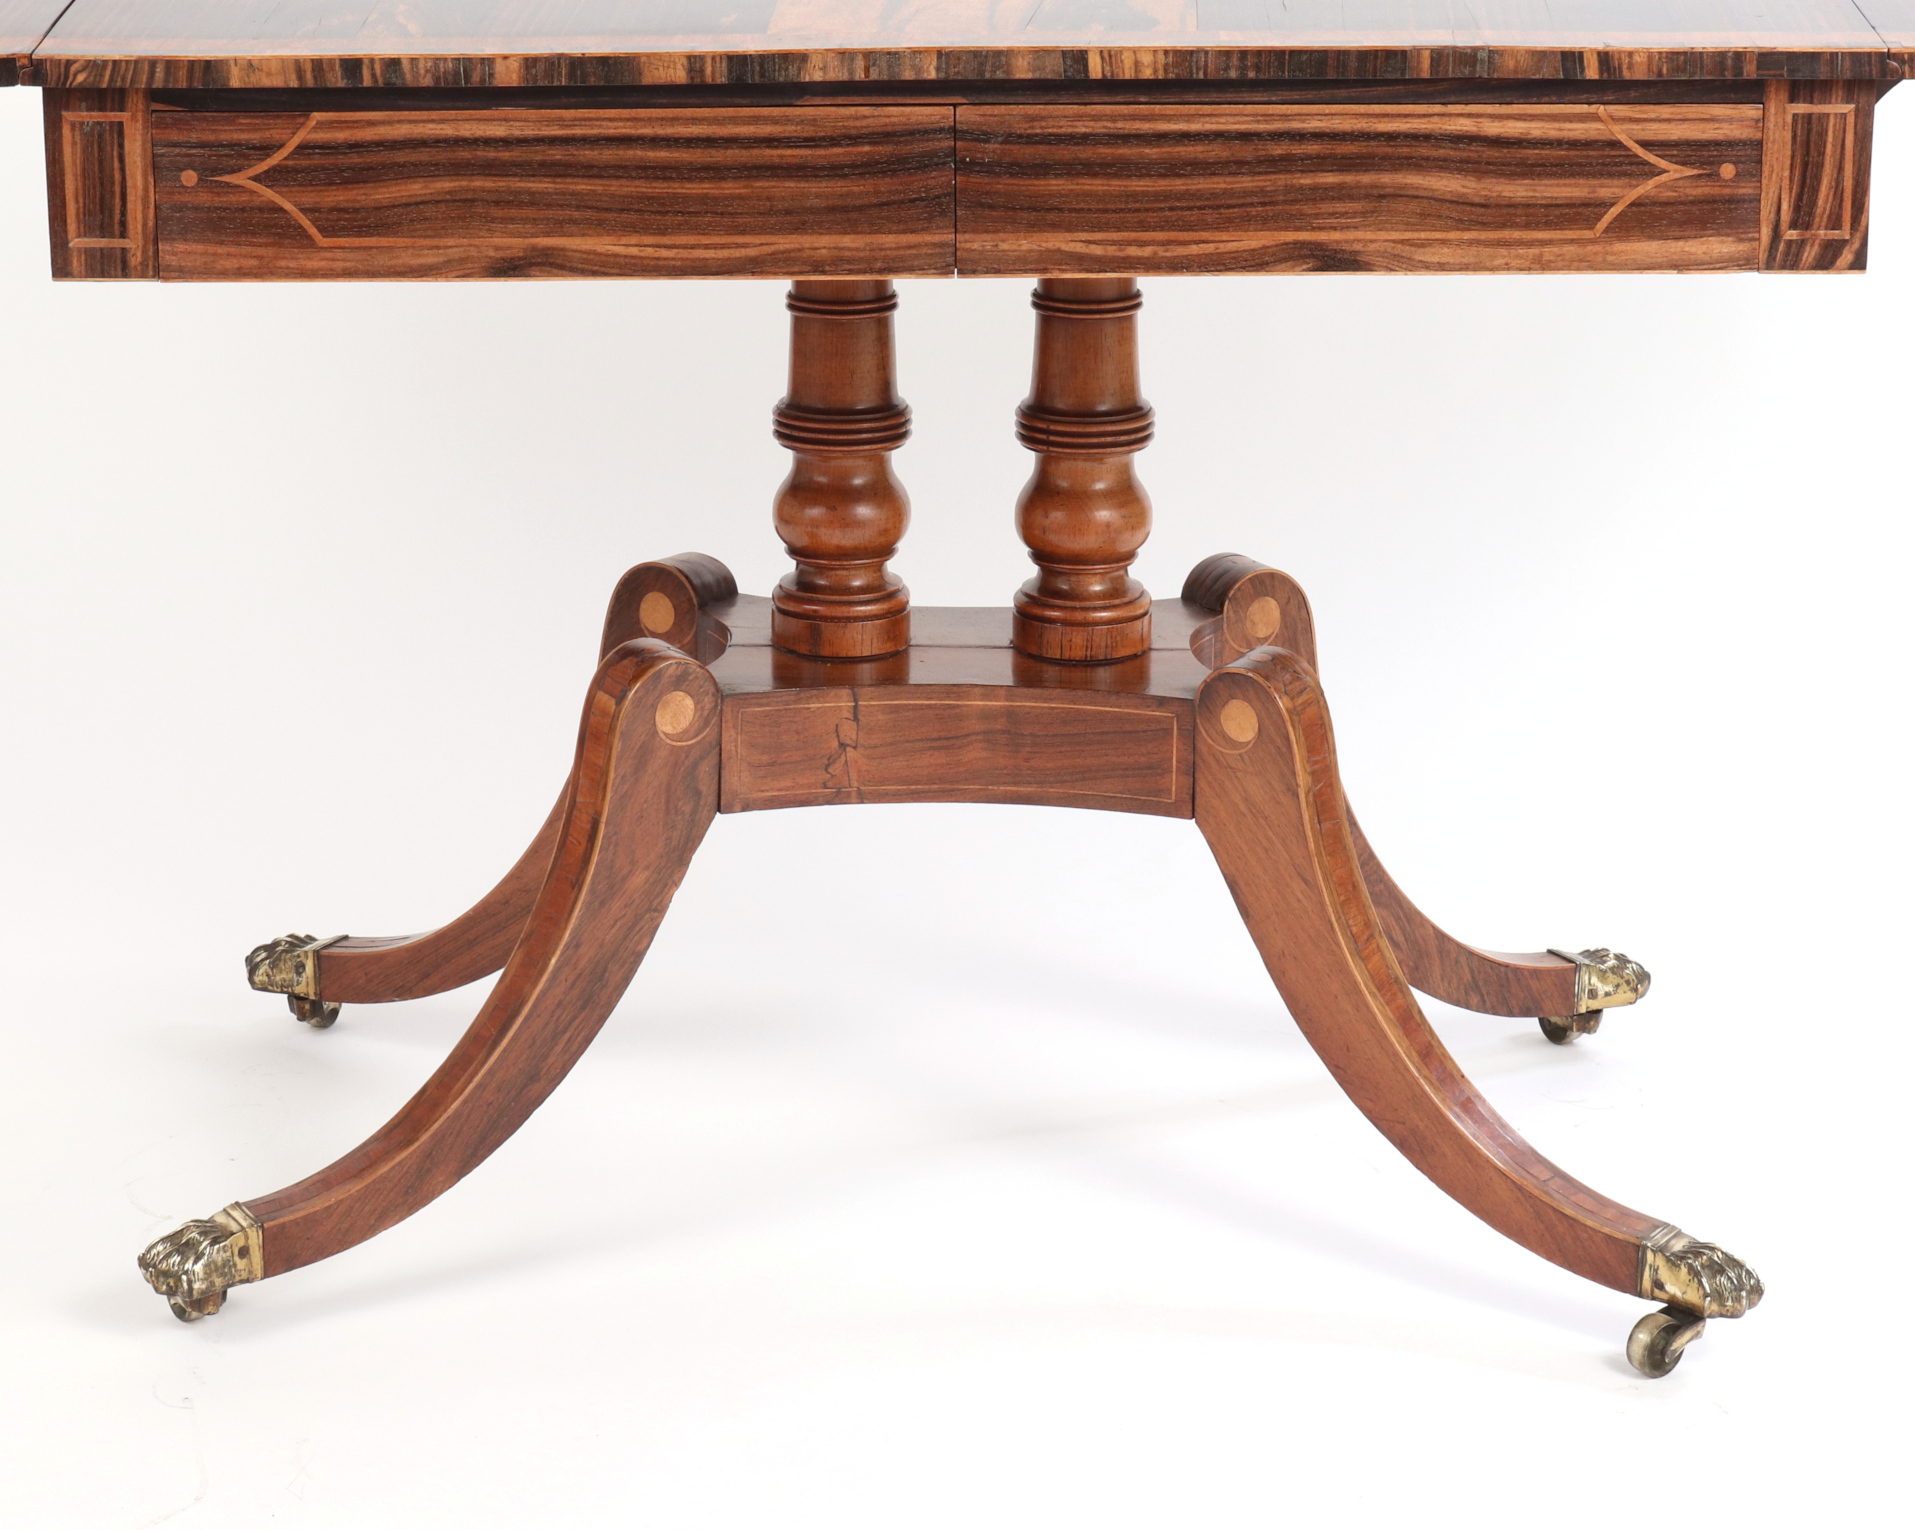 Regency Calamander and Rosewood Sofa Table, c. 1810-20